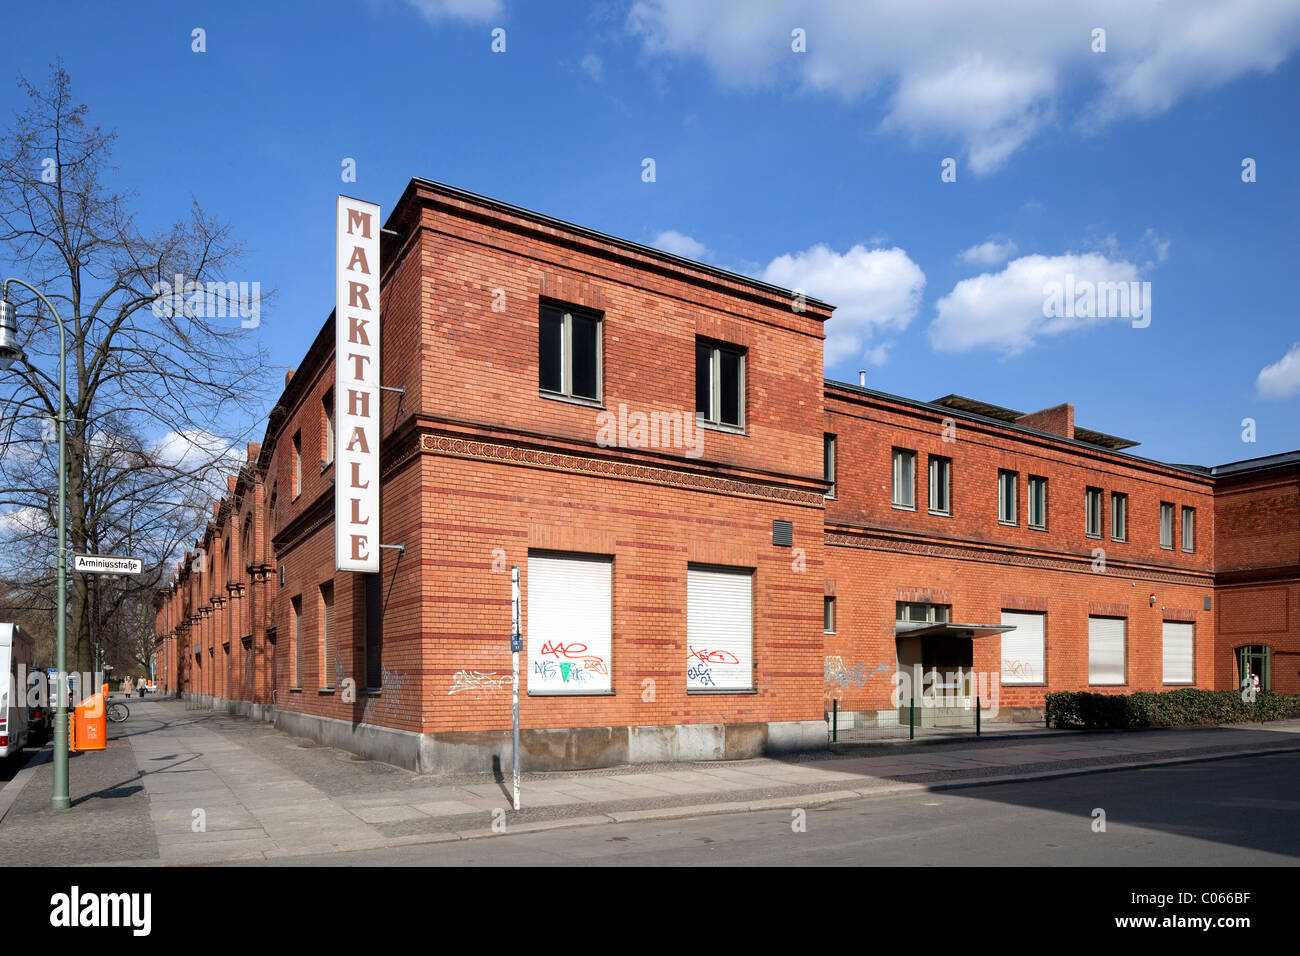 Markthalle Moabit, halle, Tiergarten, Berlin, Germany, Europe Banque D'Images